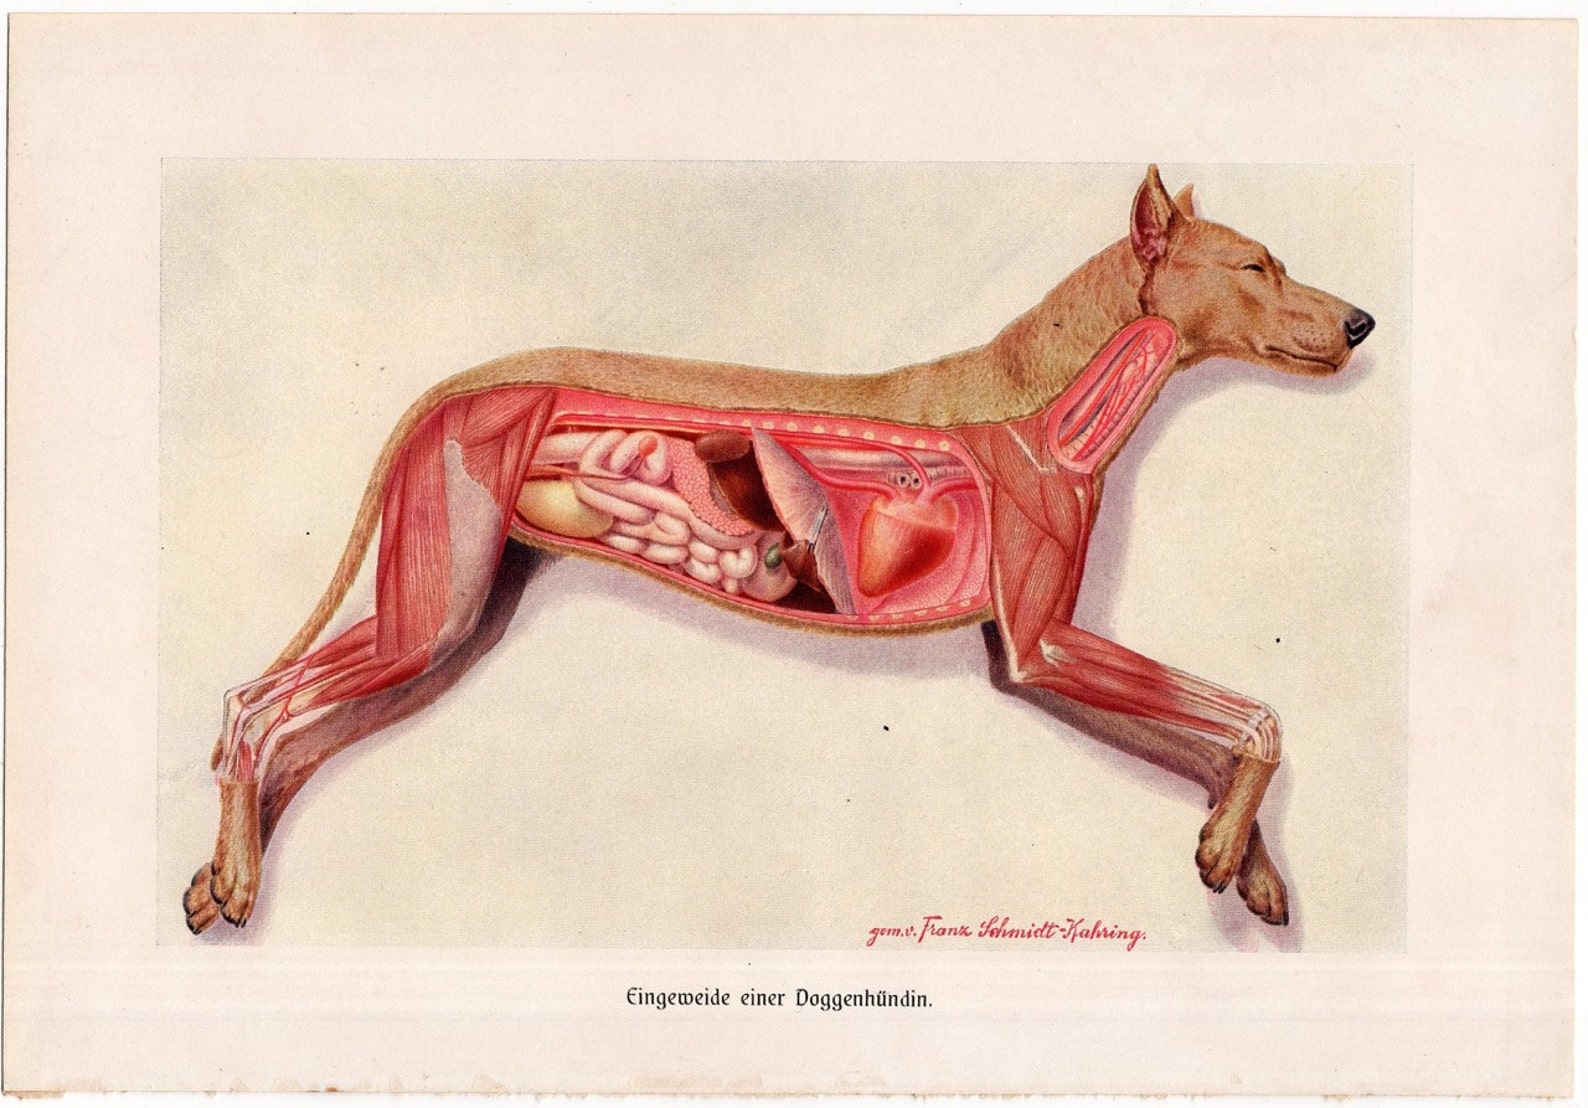 Внутреннее строение органов животных. Анатомия собаки Ветеринария внутренние органы. Организм собаки. Внутреннее строение собаки. Расположение органов у собаки.